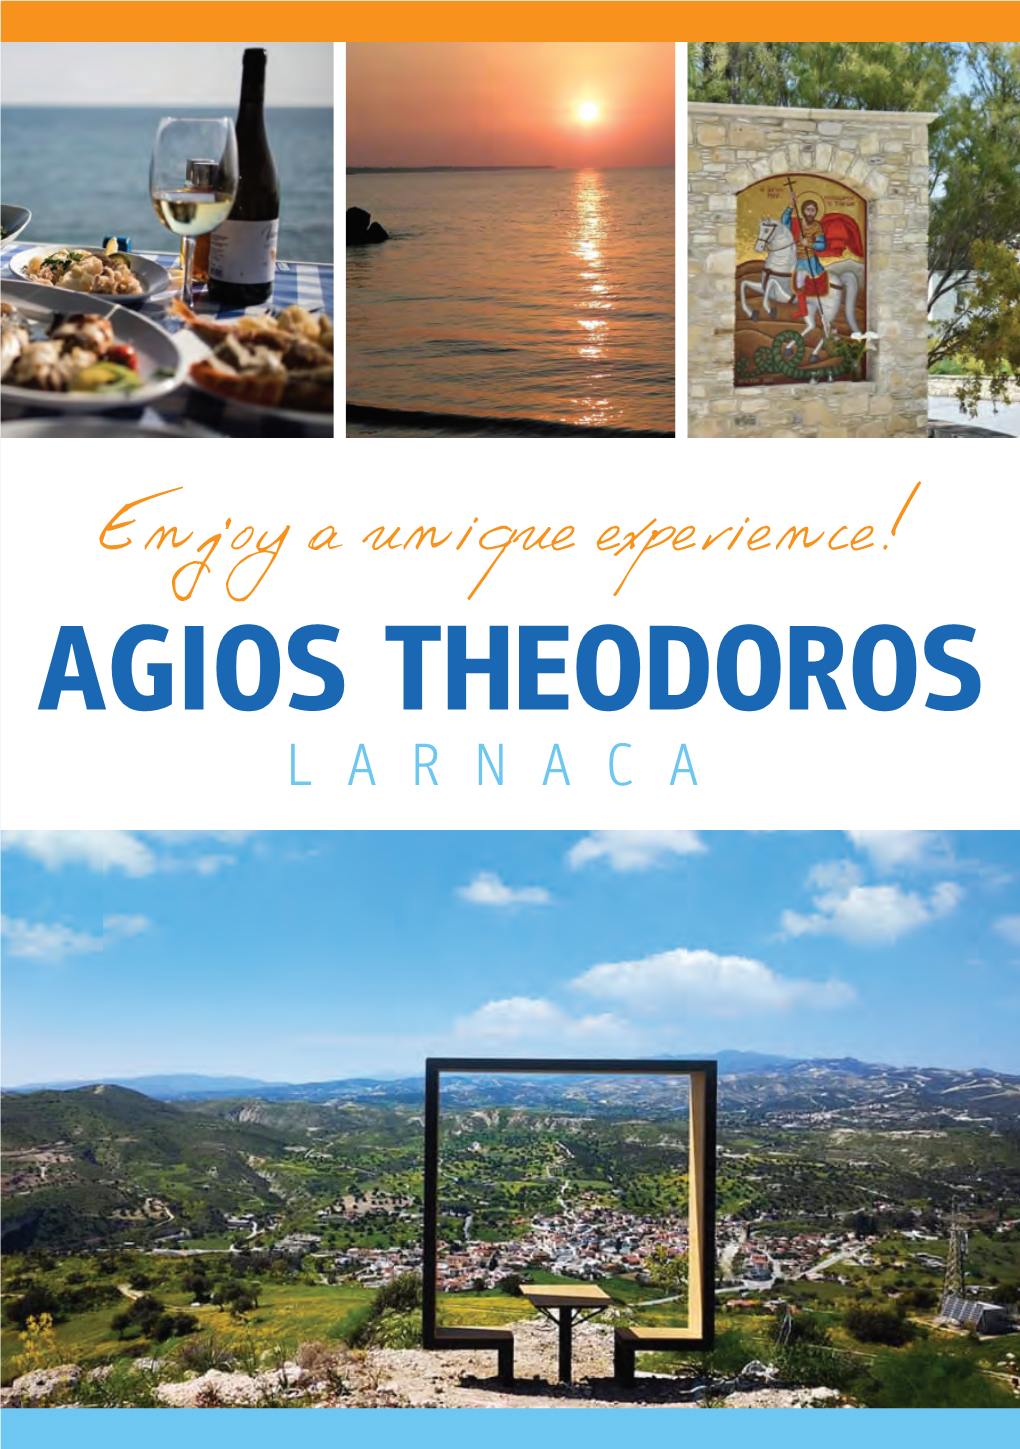 AGIOS THEODOROS LARNACA # Agiostheodoros